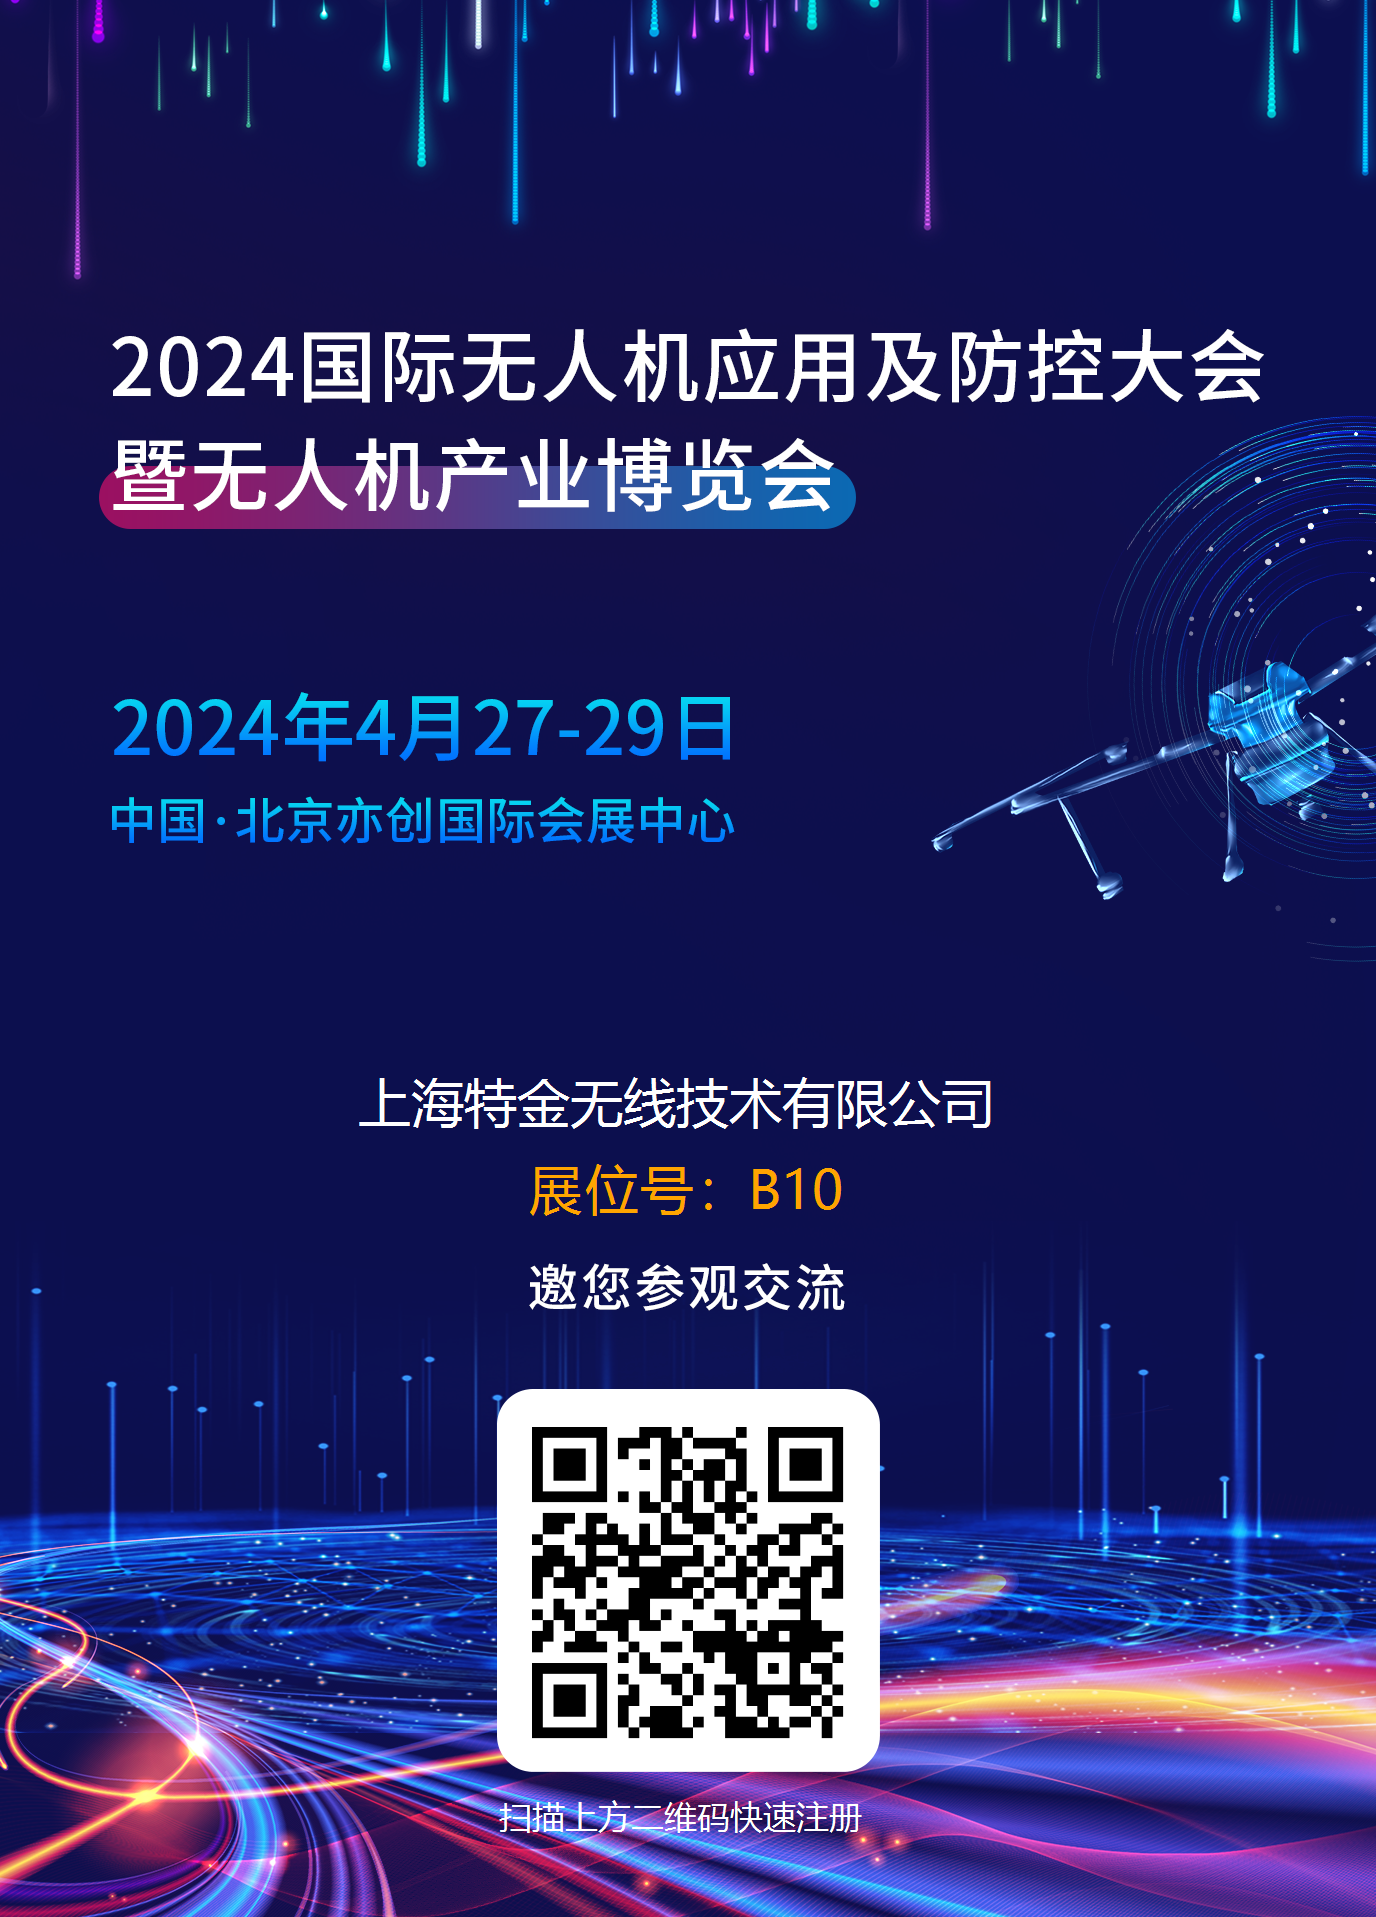 【展会预告】2024国际无人机应用及防控大会暨无人机产业博览会